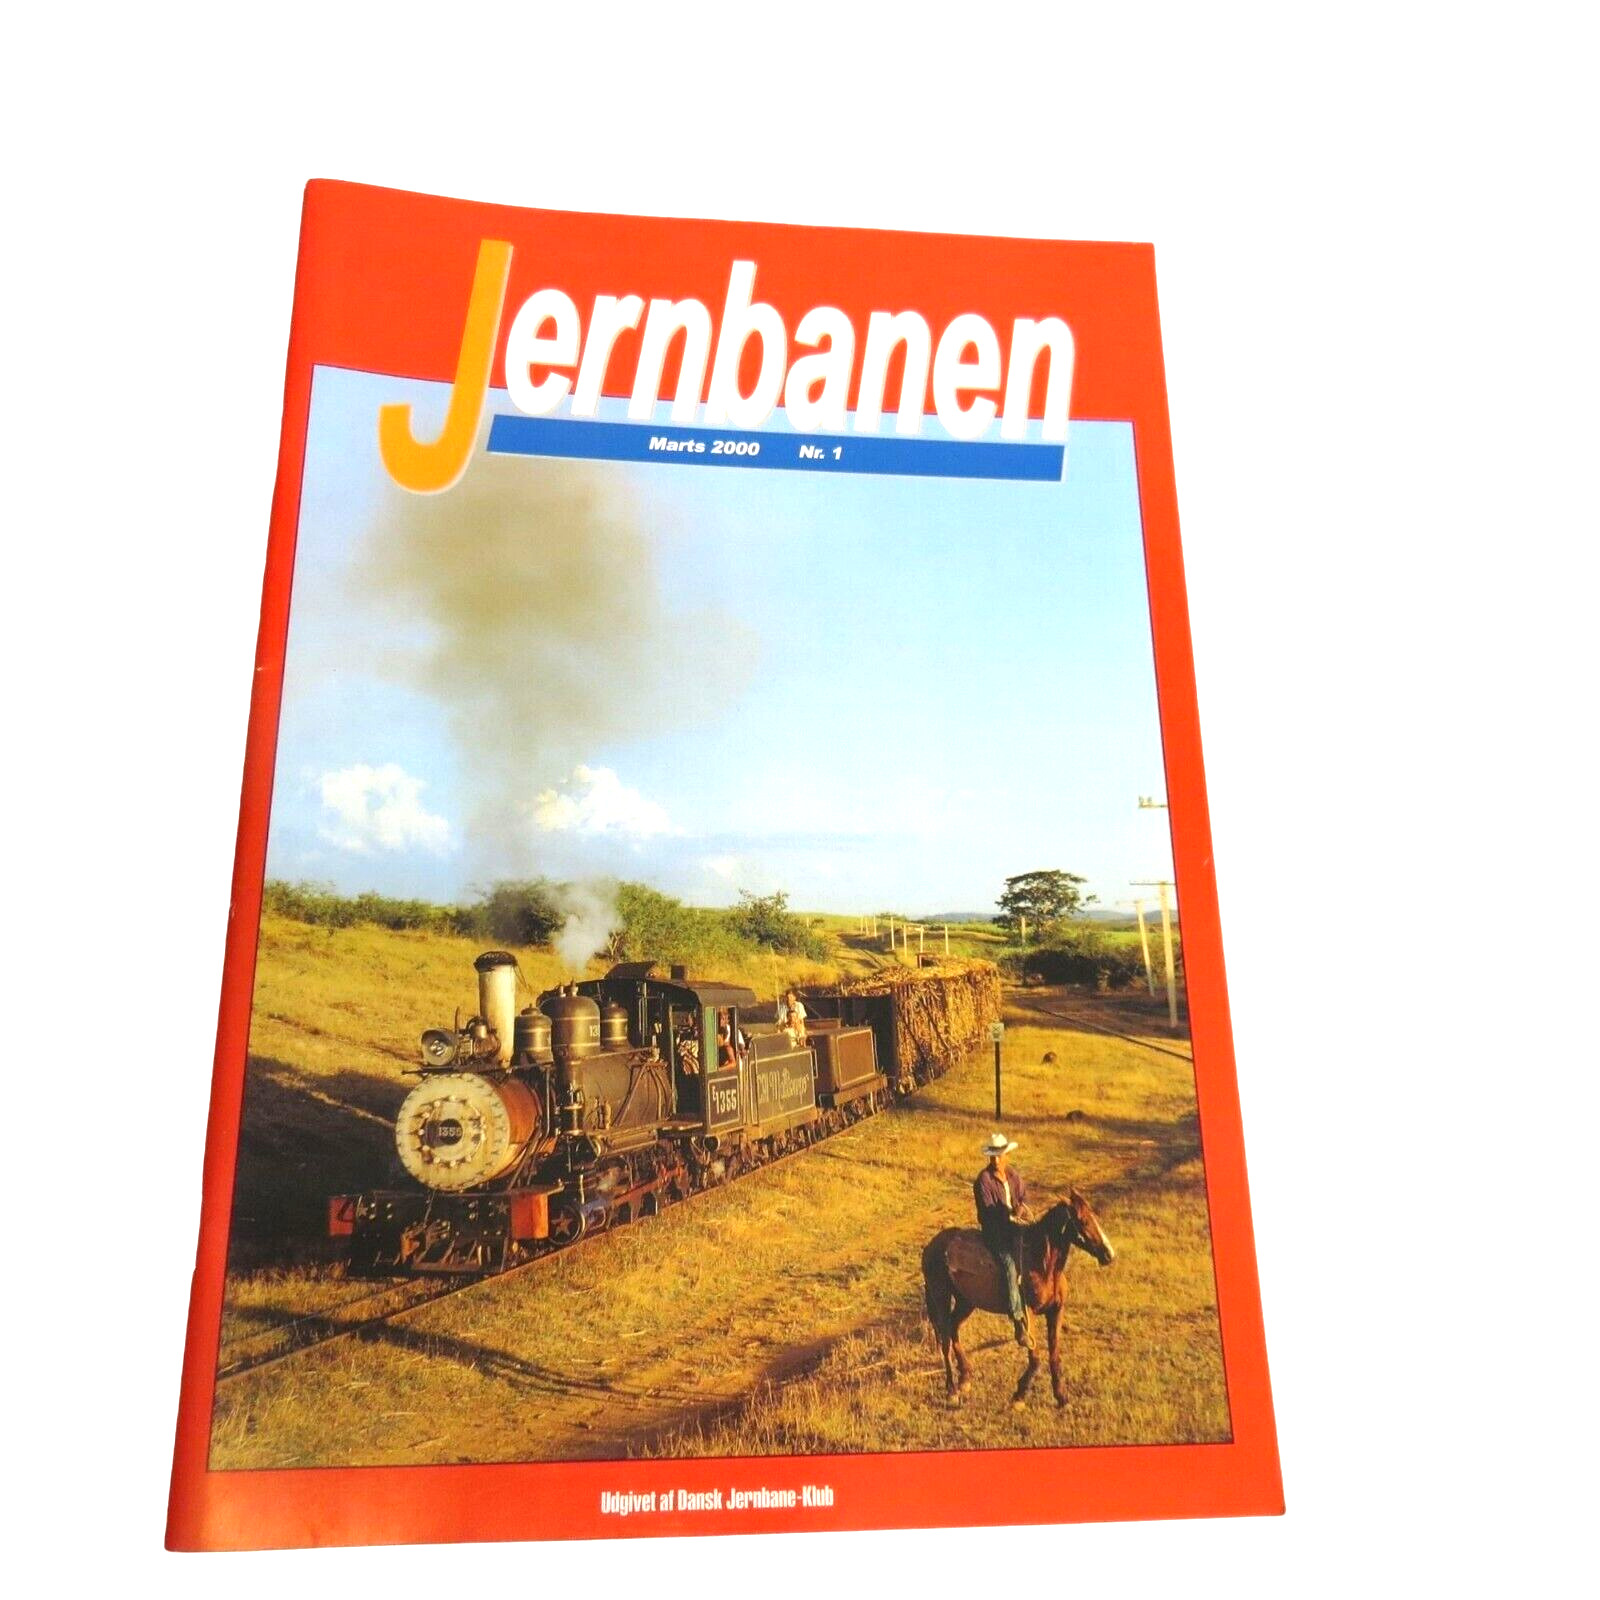 Jernbanen (The Railway) Norwegian Railraod Train Magazine March 2000